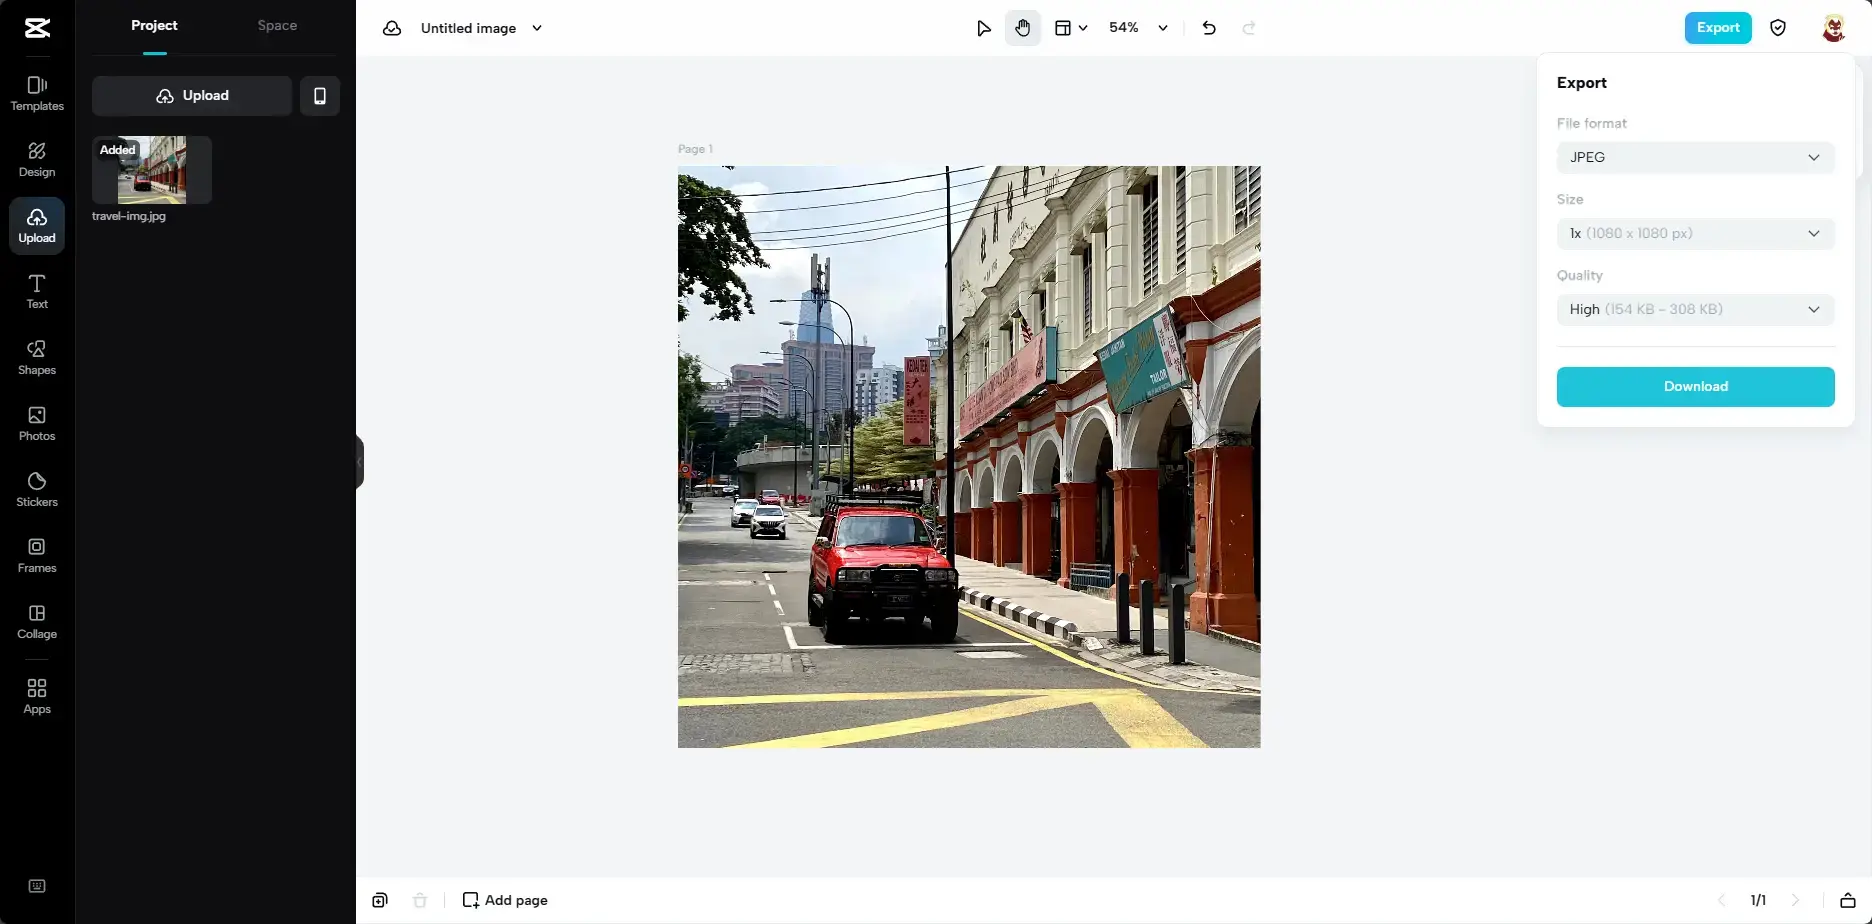 Compressor GIF  Comprima GIFs Online para Upload e Compartilhamento Rápido